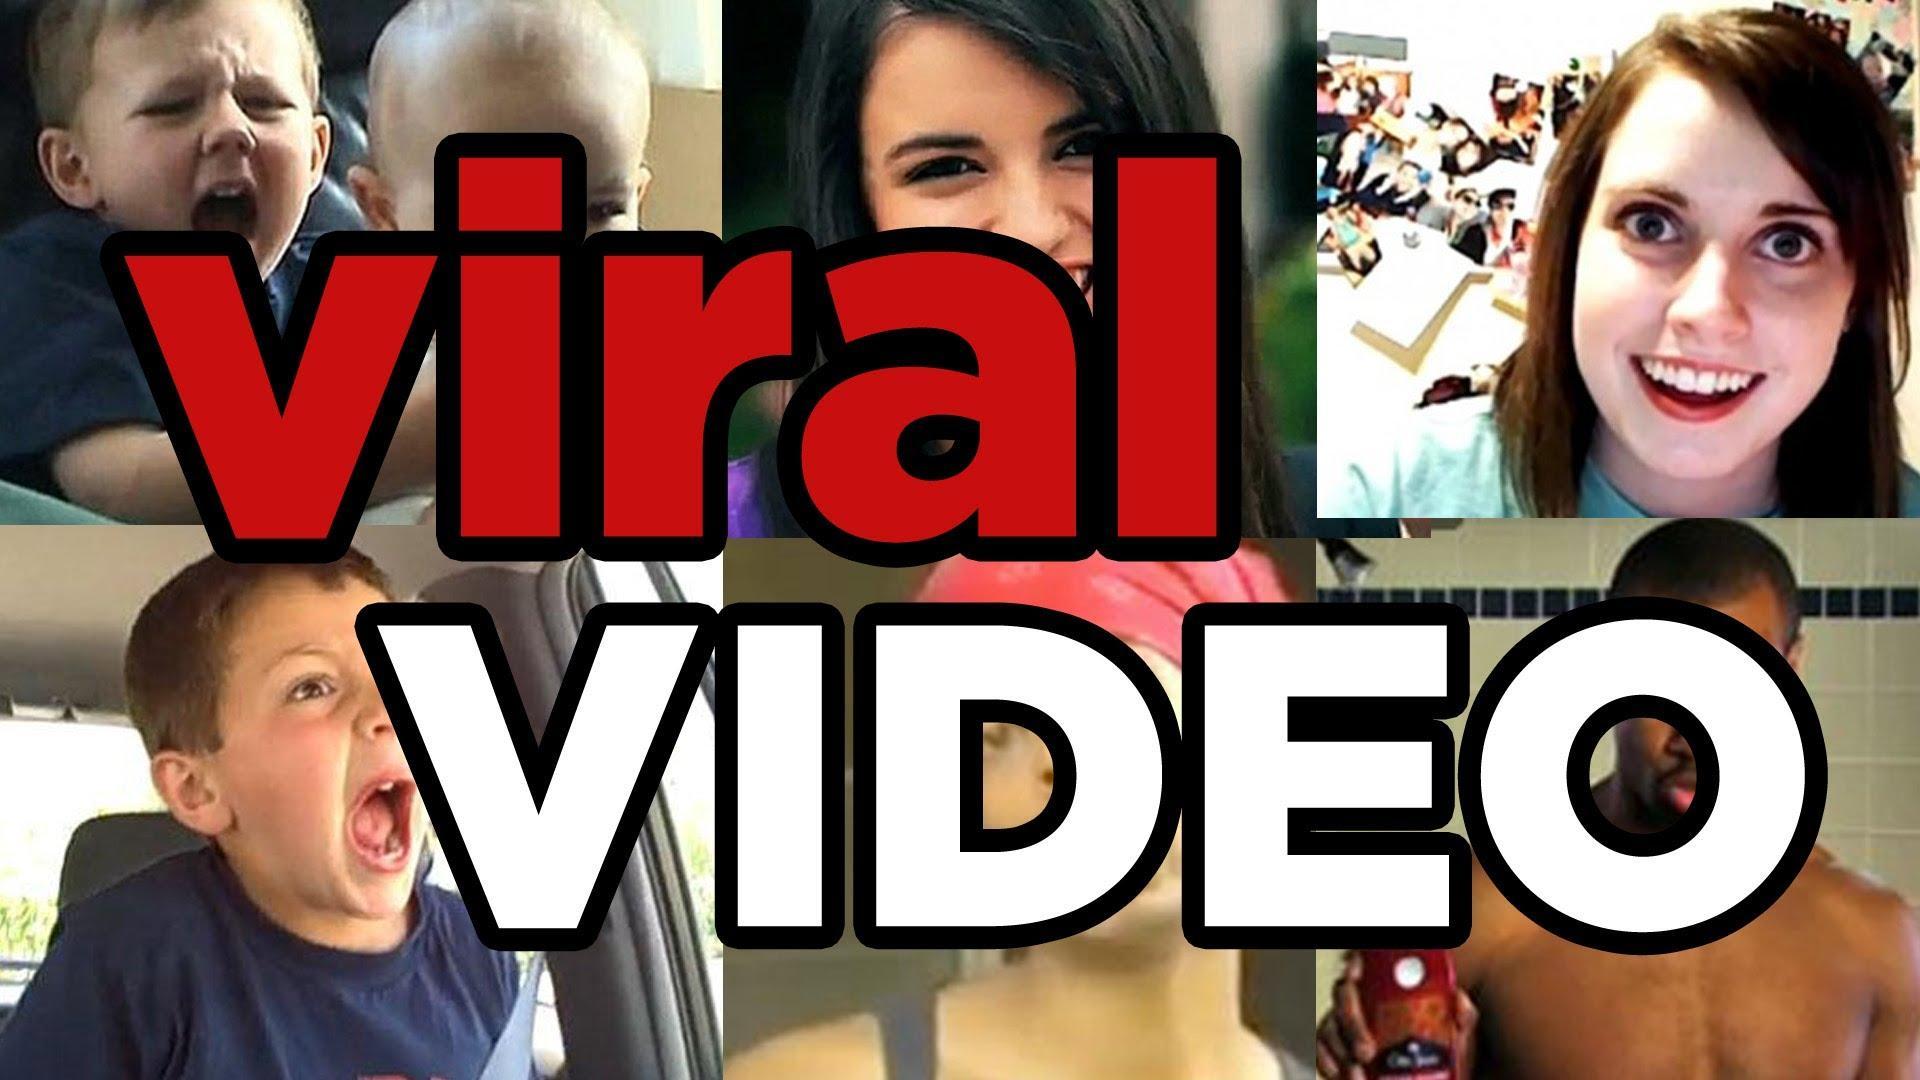 Video viral open